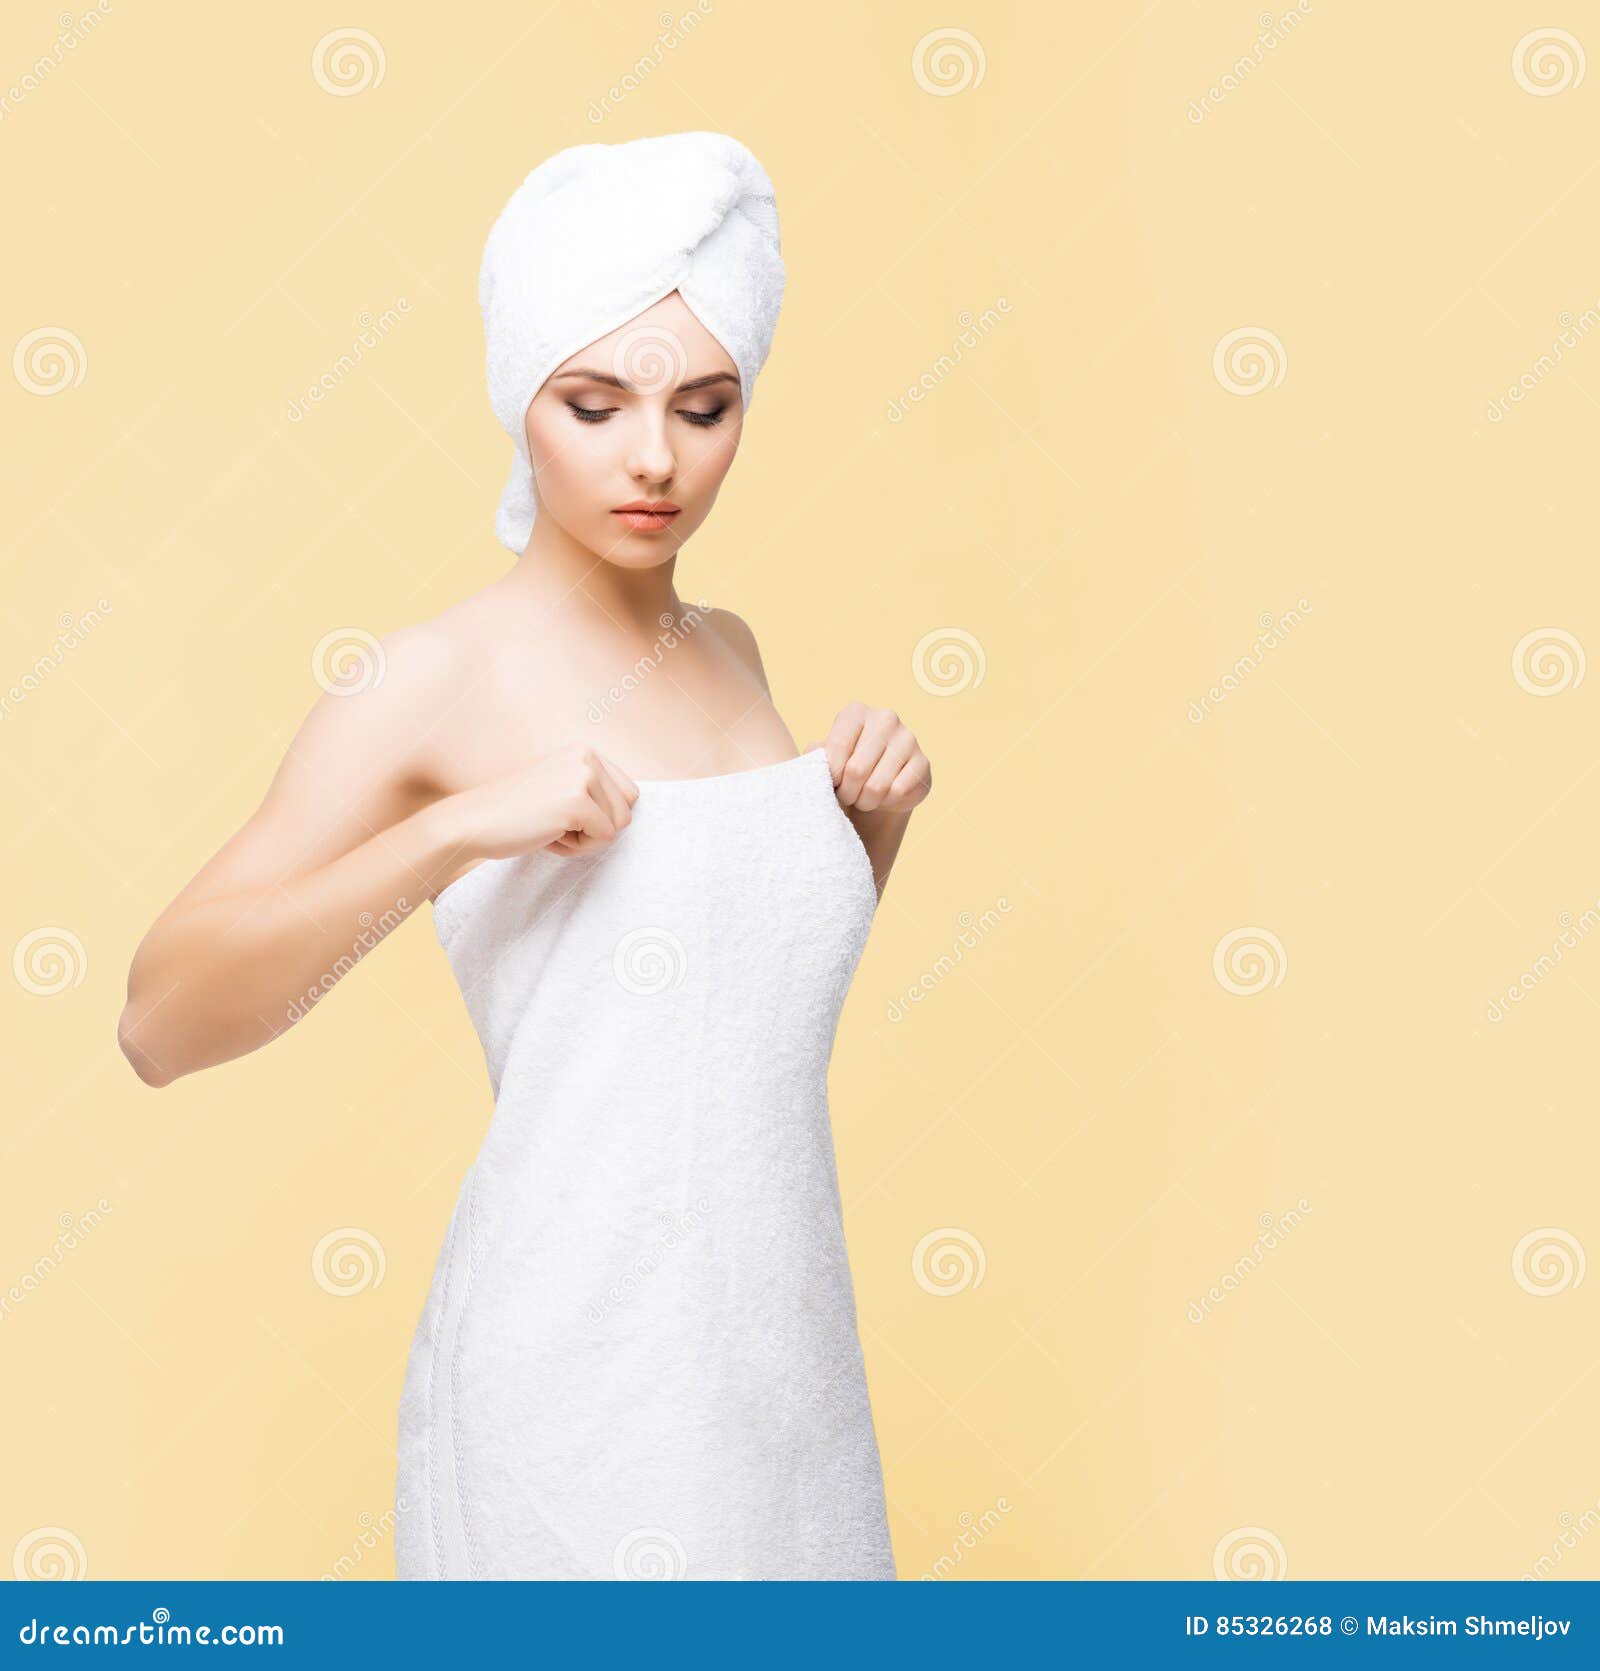 Работа в полотенце. Женщина в полотенце арт. Девушка замотана в полотенце арт. Девушка в полотенце со спины. Девушки обернутые в полотенце рисунок.